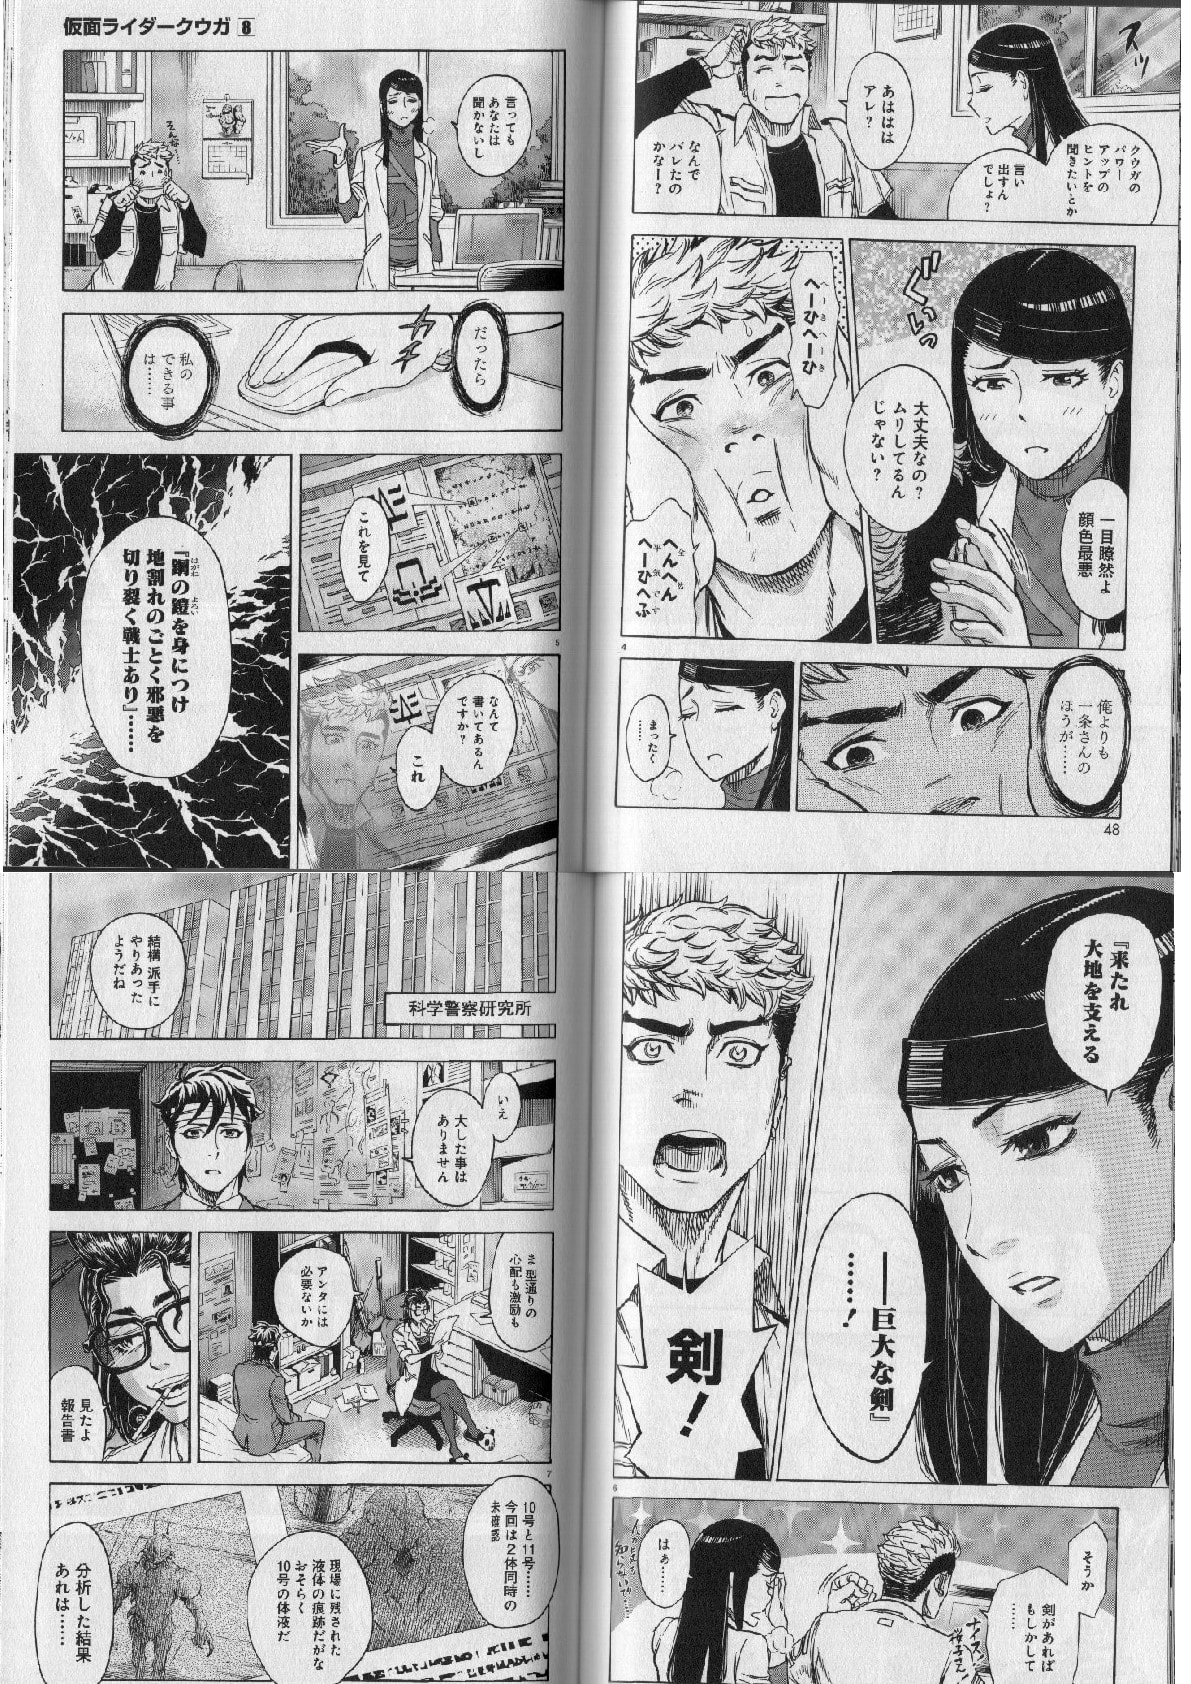 仮面ライダークウガ０８ 新たなる力を必要としているが言い出せず桜子さんの周りをウロウロする五代 個人的に気に入った漫画 だったり 書籍だったりを気まぐれで紹介するモトブログおじさん